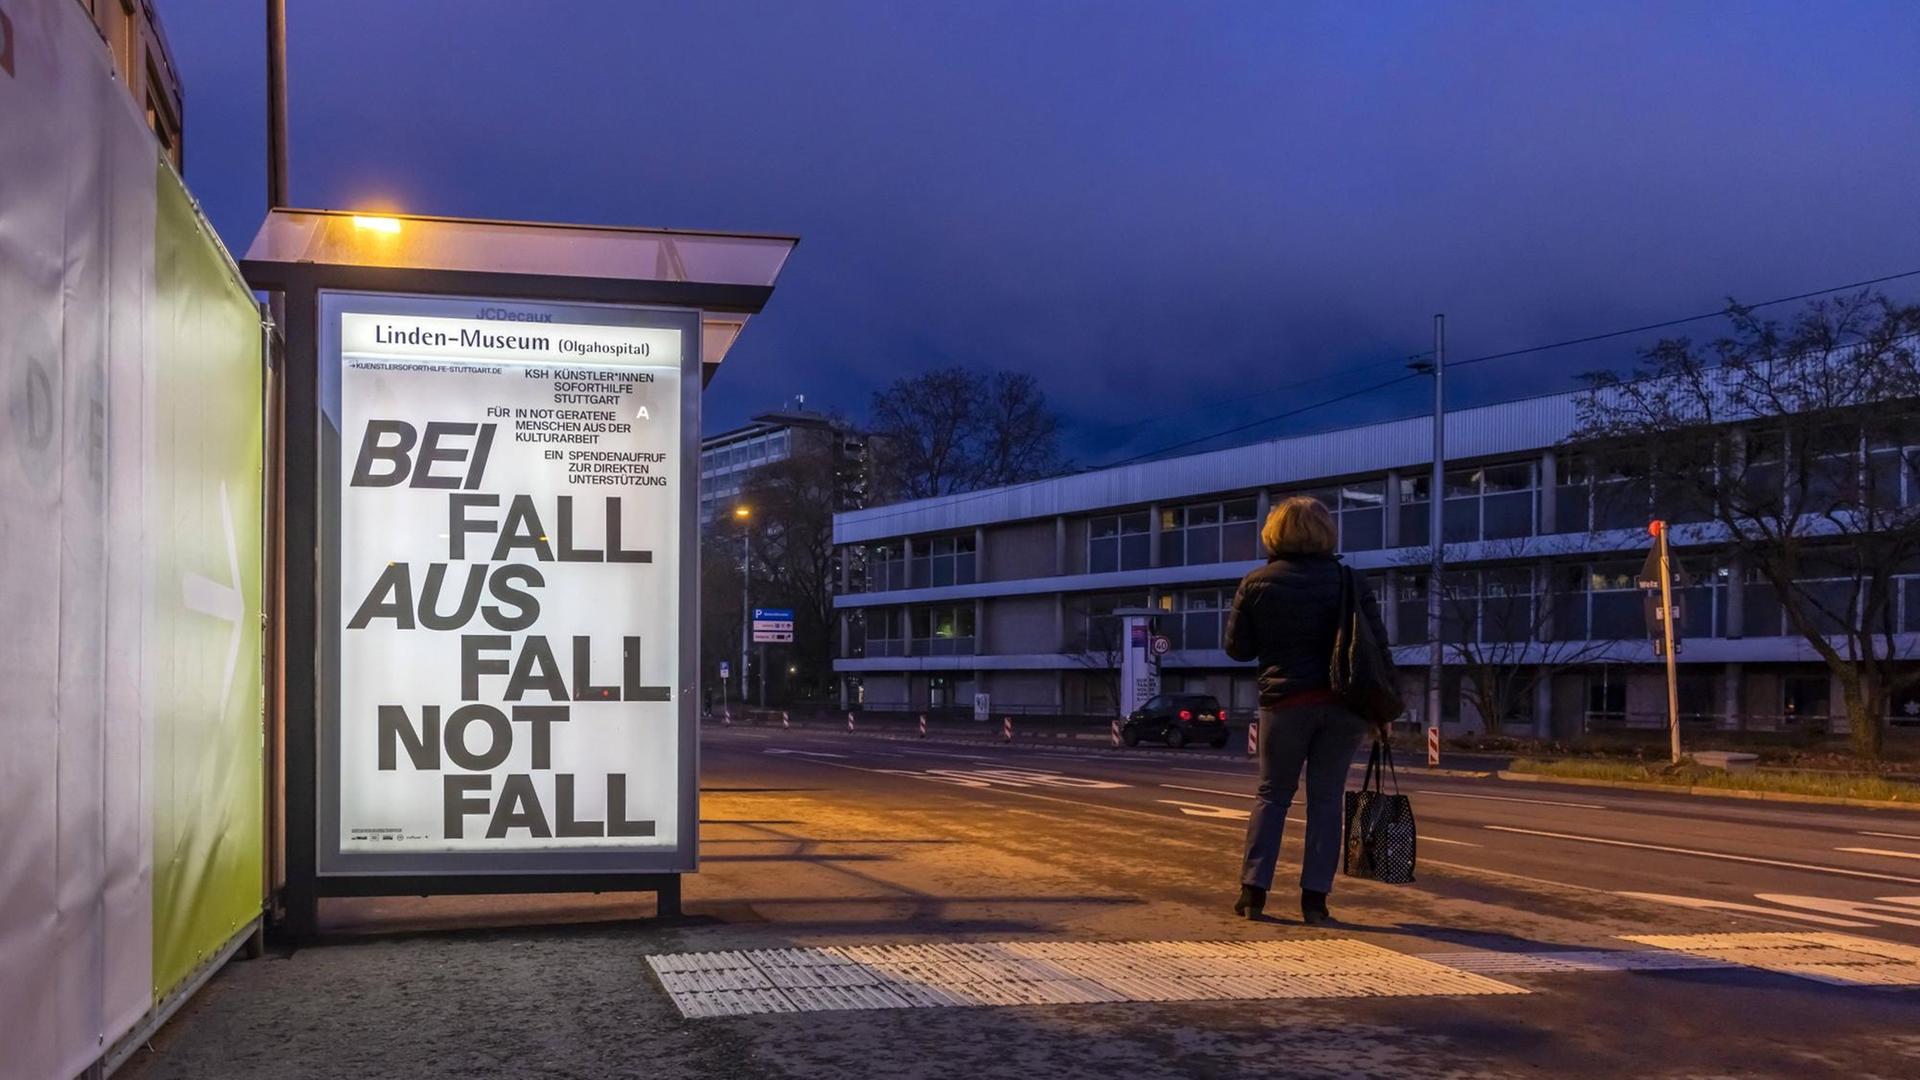 Zu sehen ist eine dunkle, leere Straße. An einer Bushaltestelle ist ein beleuchtetes Plakat mit dem Text "Beifall, Ausfall, Notfall" / 11.03.2021, Stuttgart.